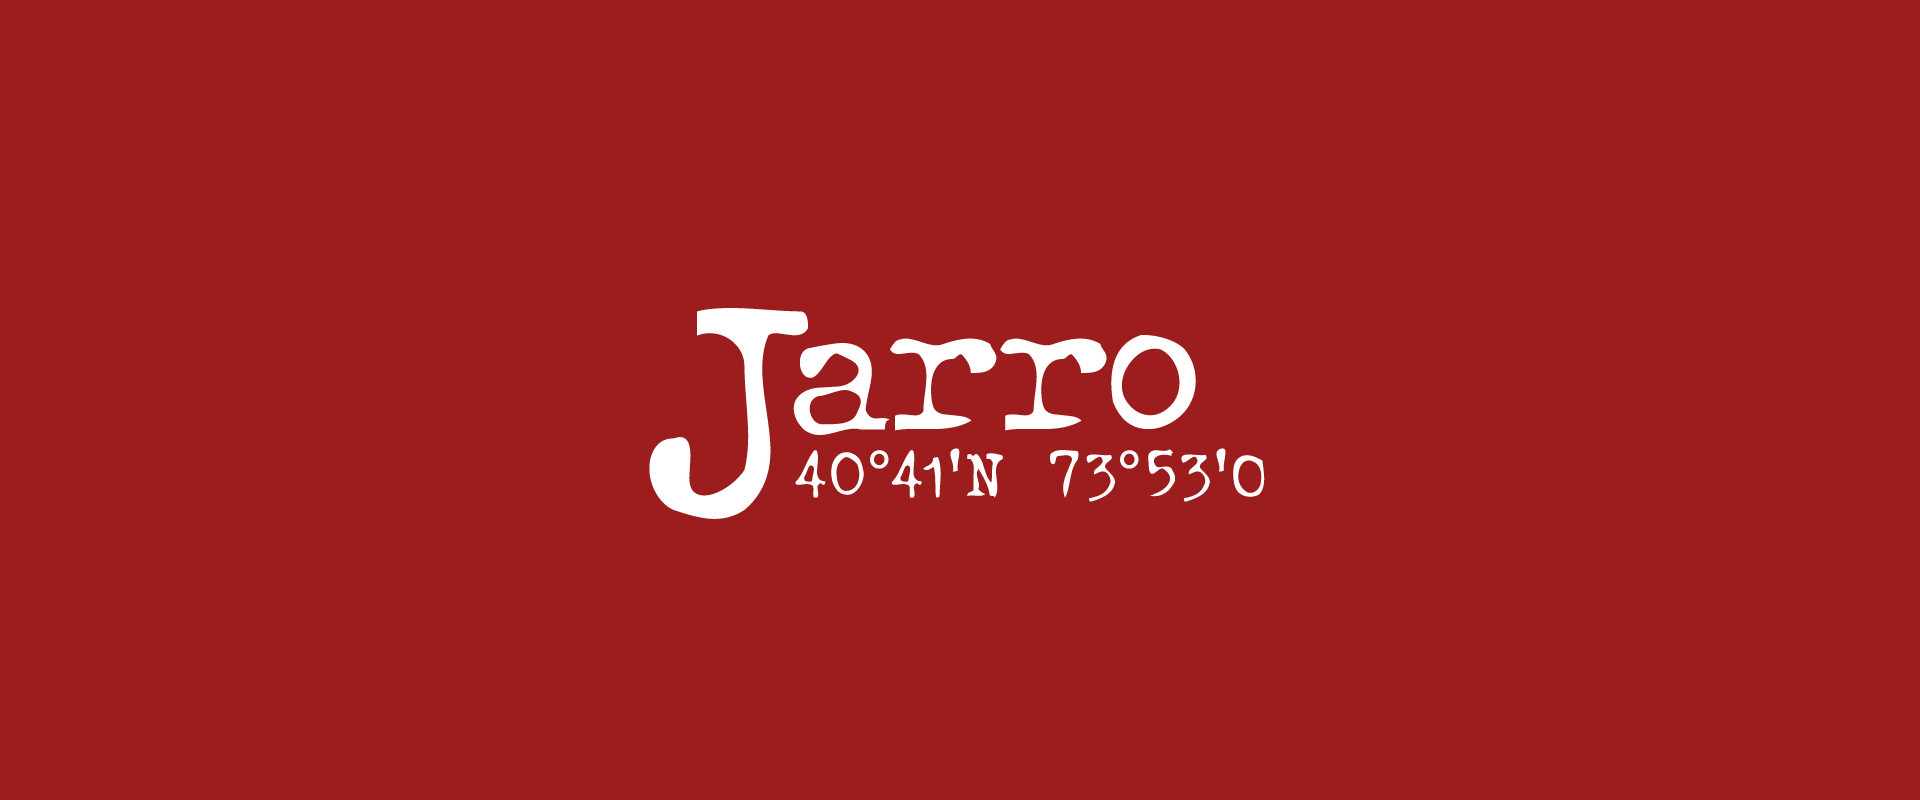 jarro03